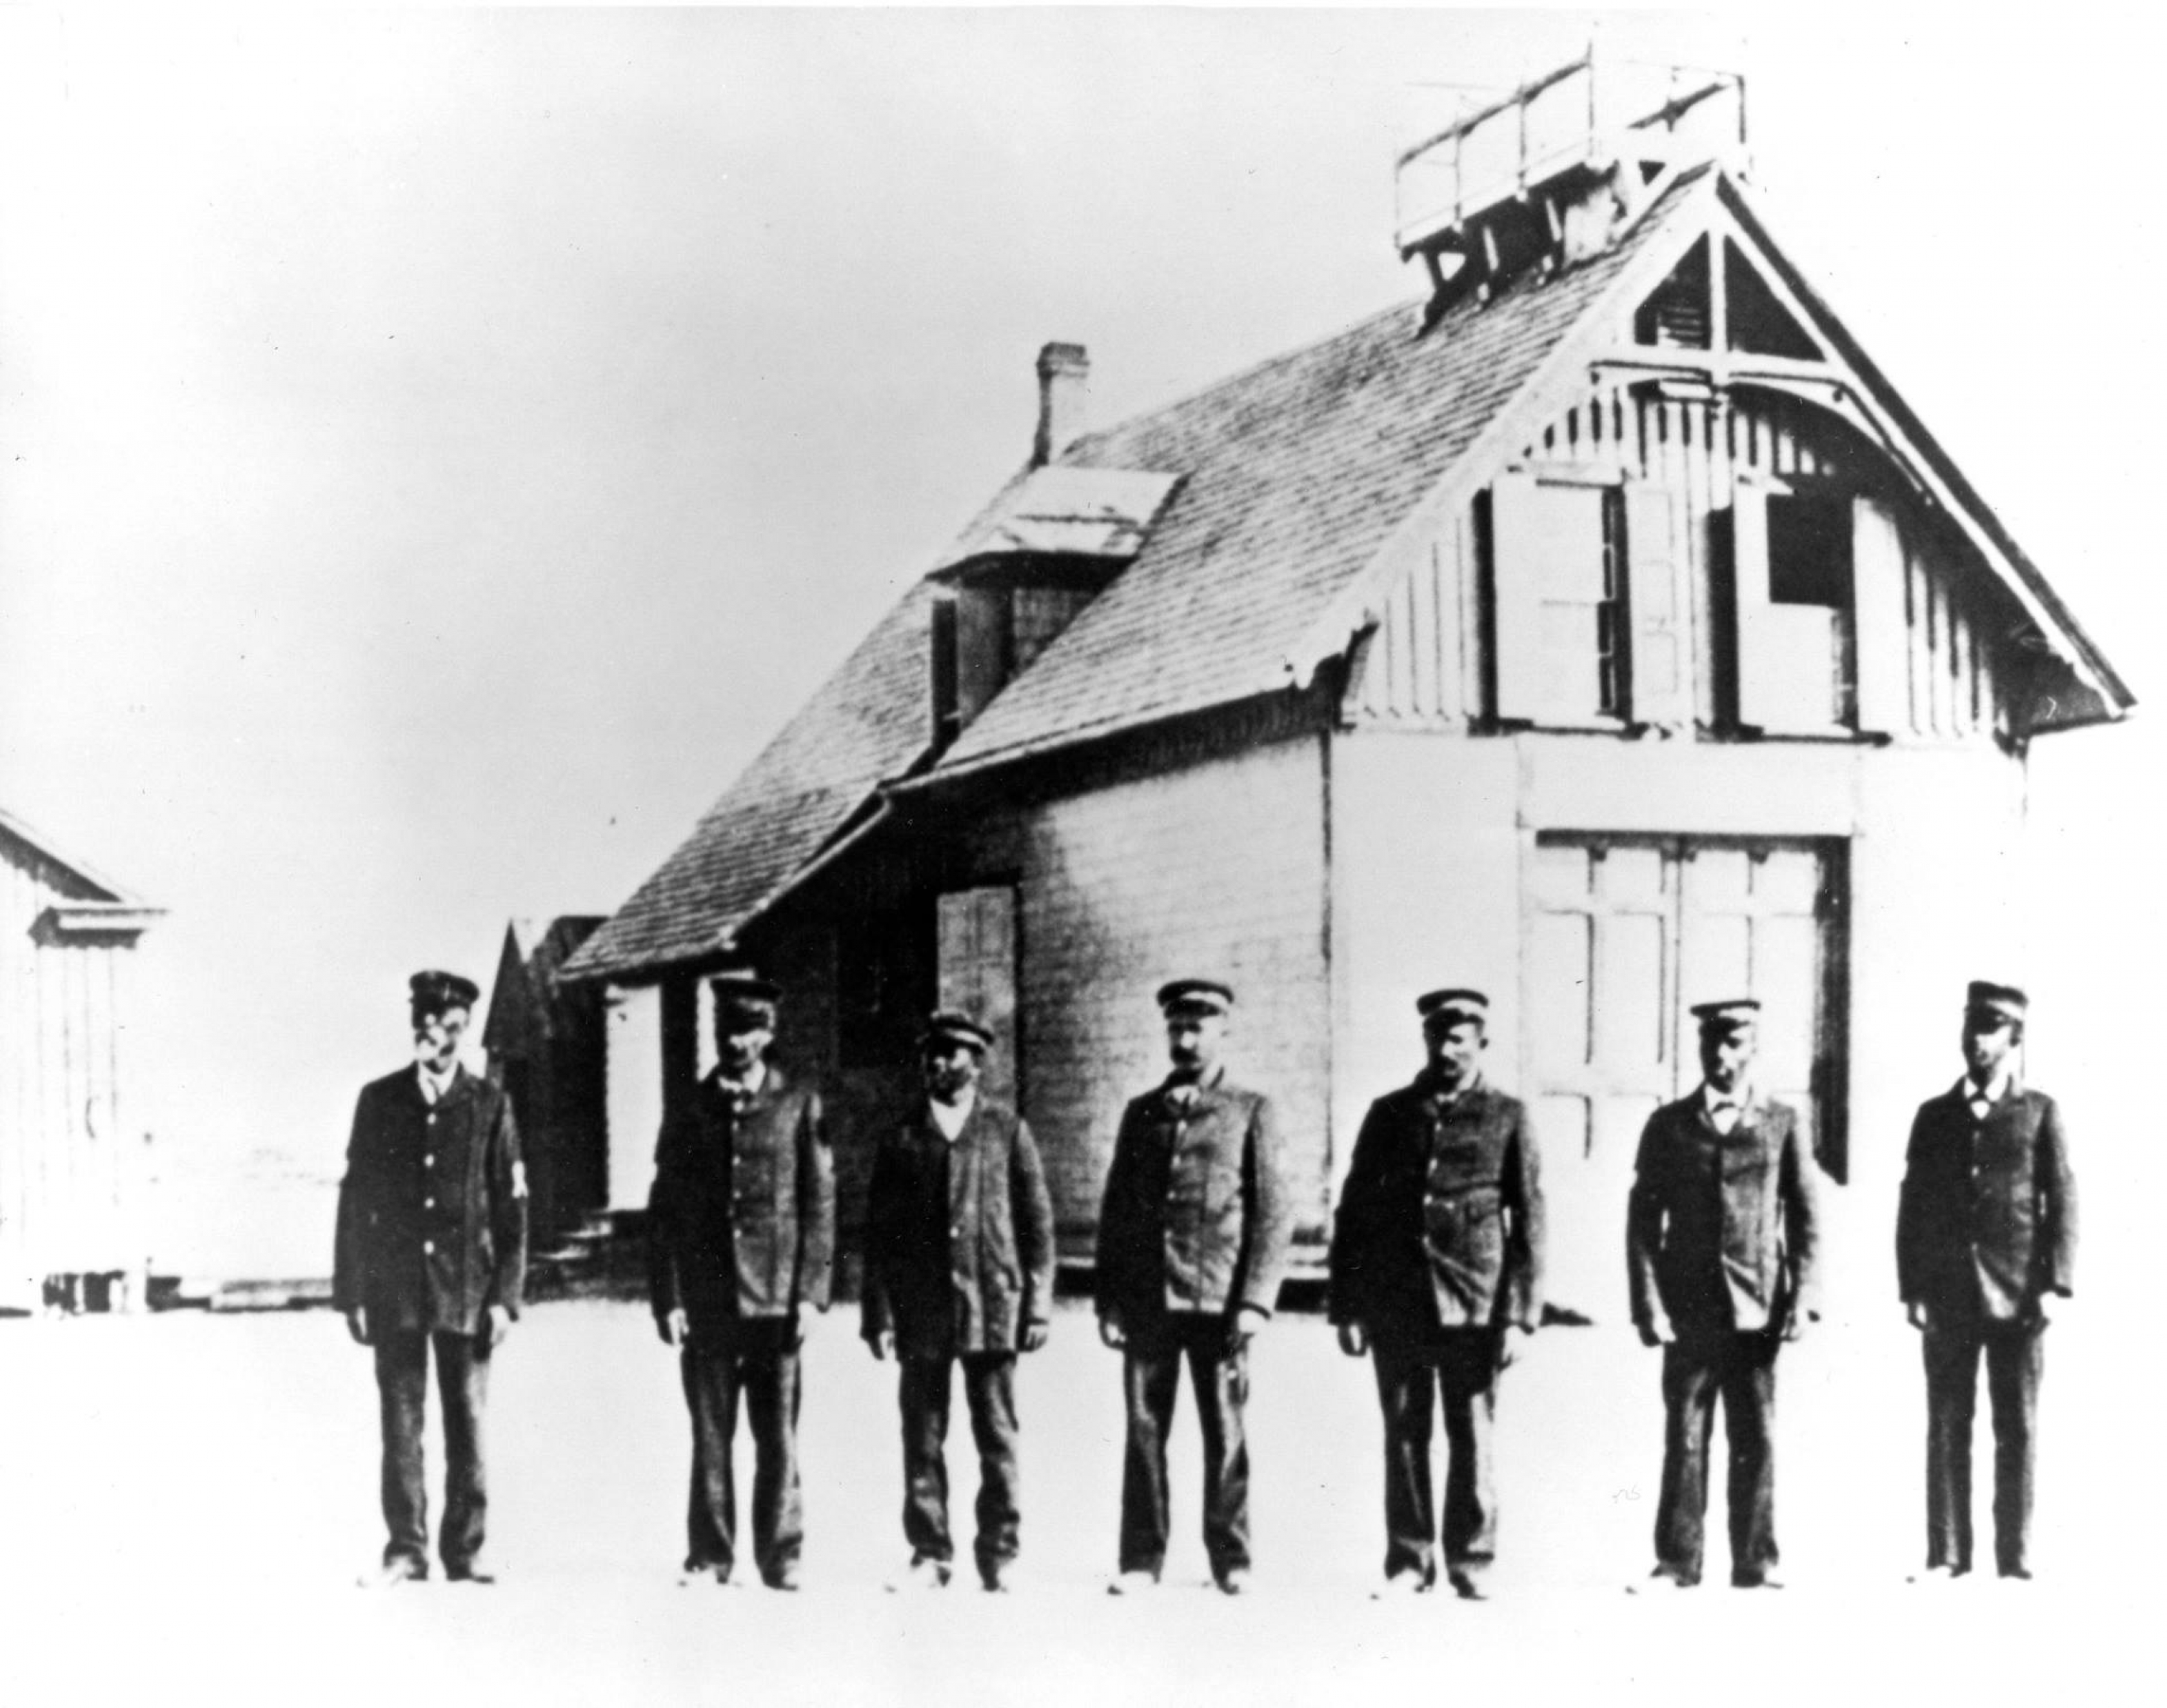 Imagen histórica del capitán Richard Etheridge y su tripulación en Cape Hatteras National Seashore